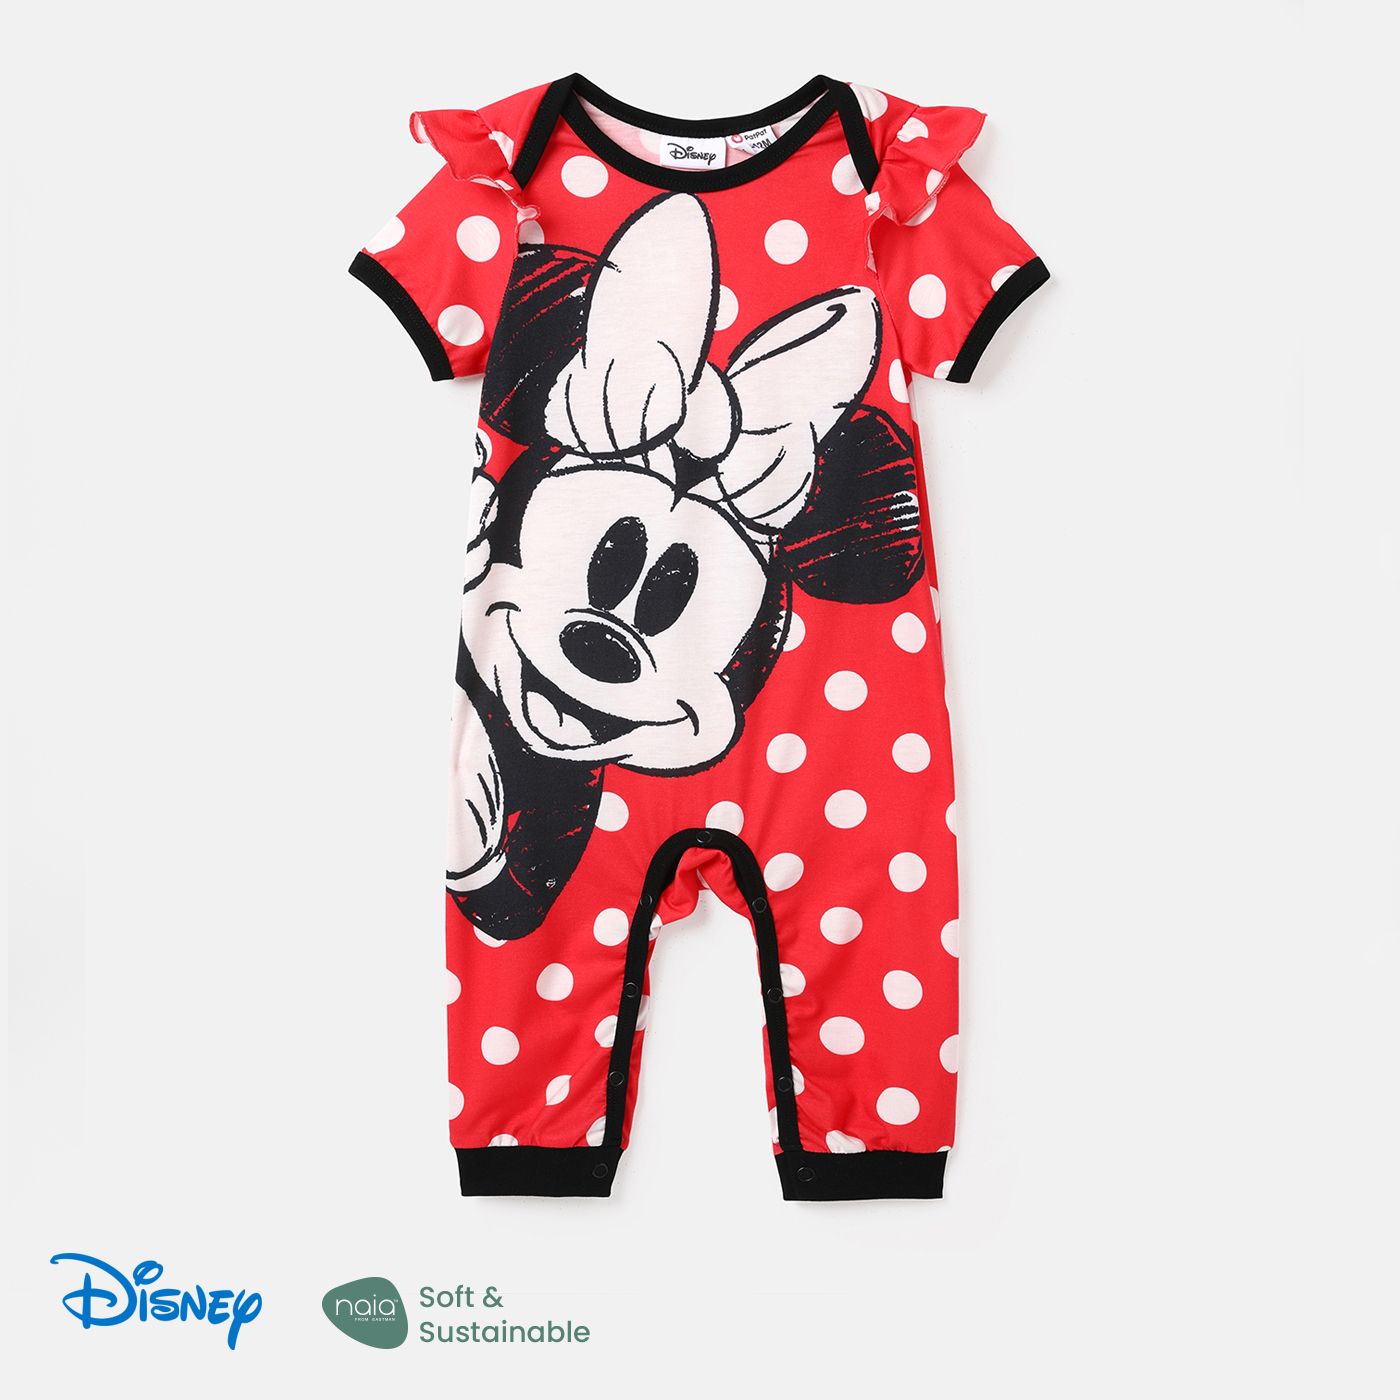 Disney Mickey And Friends Character & Polka Dots Print Naiaâ¢ Dresses For Mom And Me